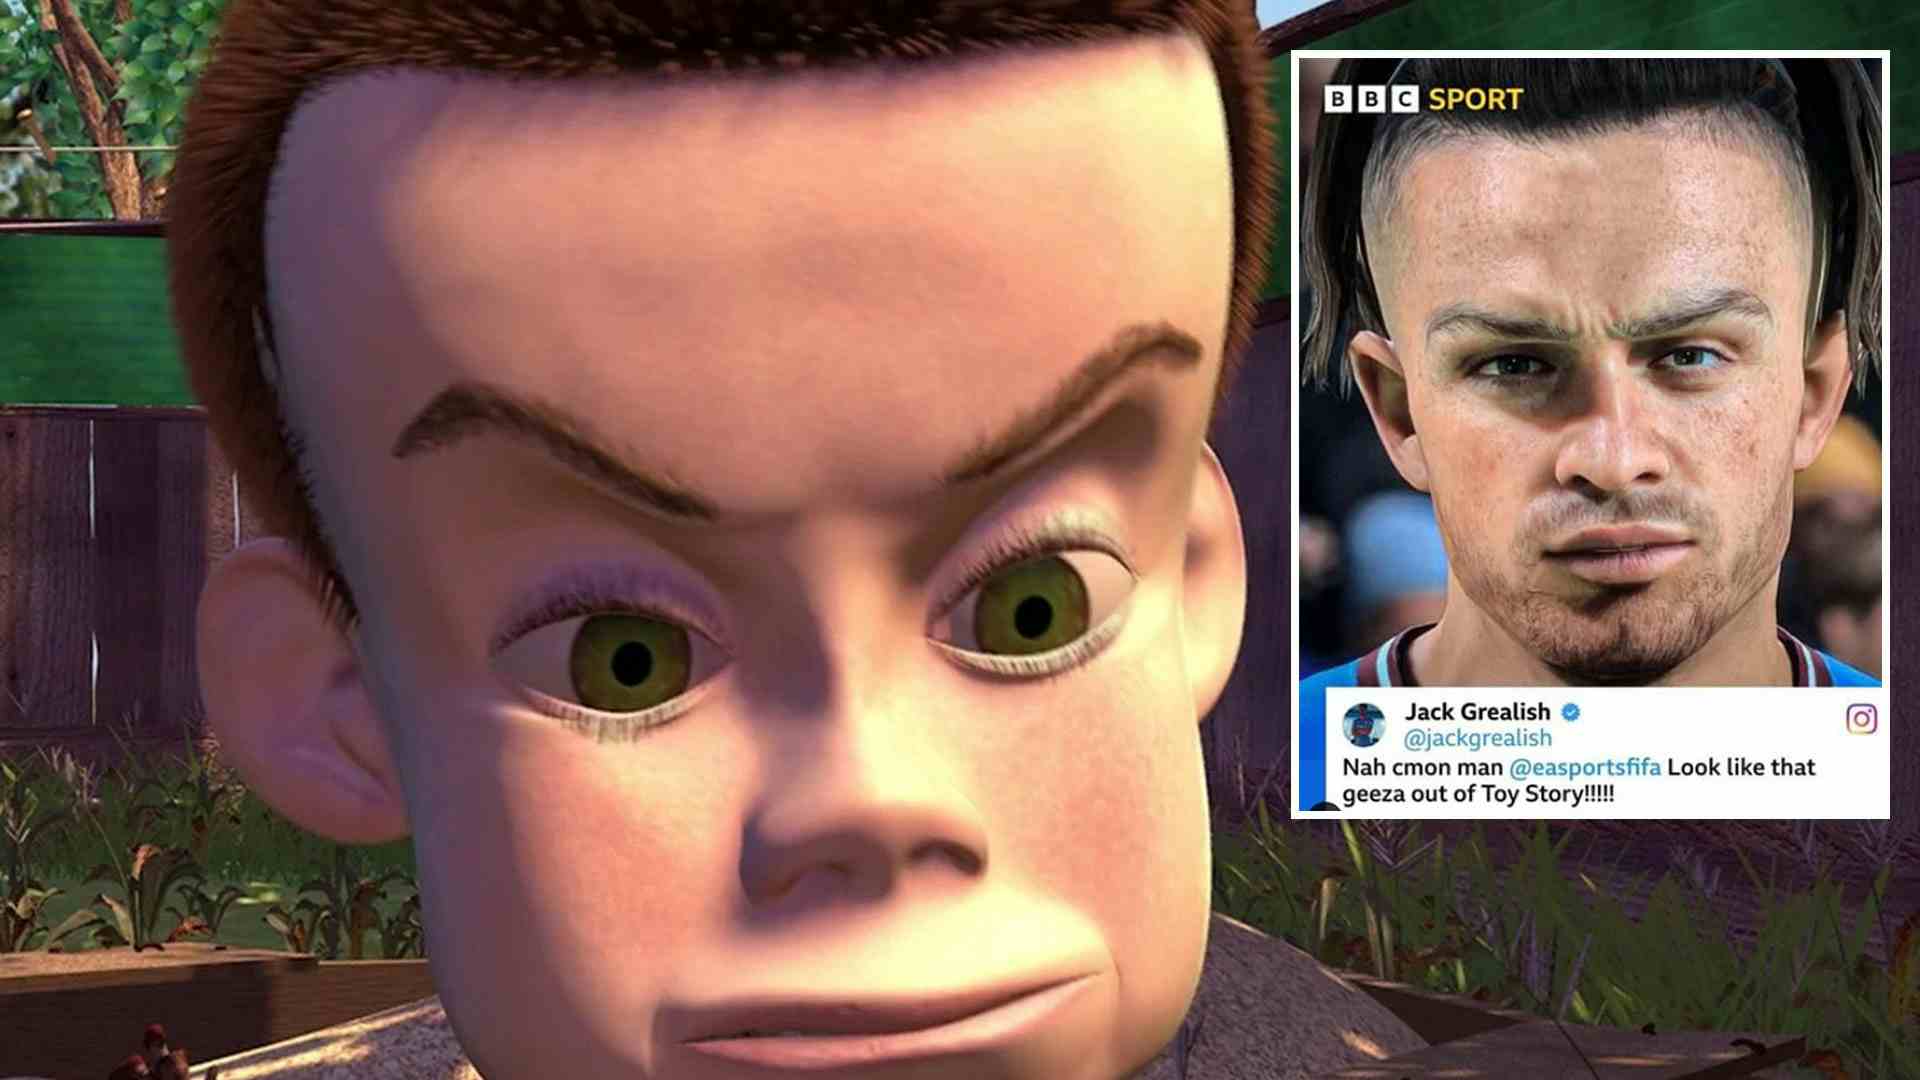 L’immagine di Grealish su Fifa 23 diventa virale. Lui commenta: “Sembro quello di Toy Story”